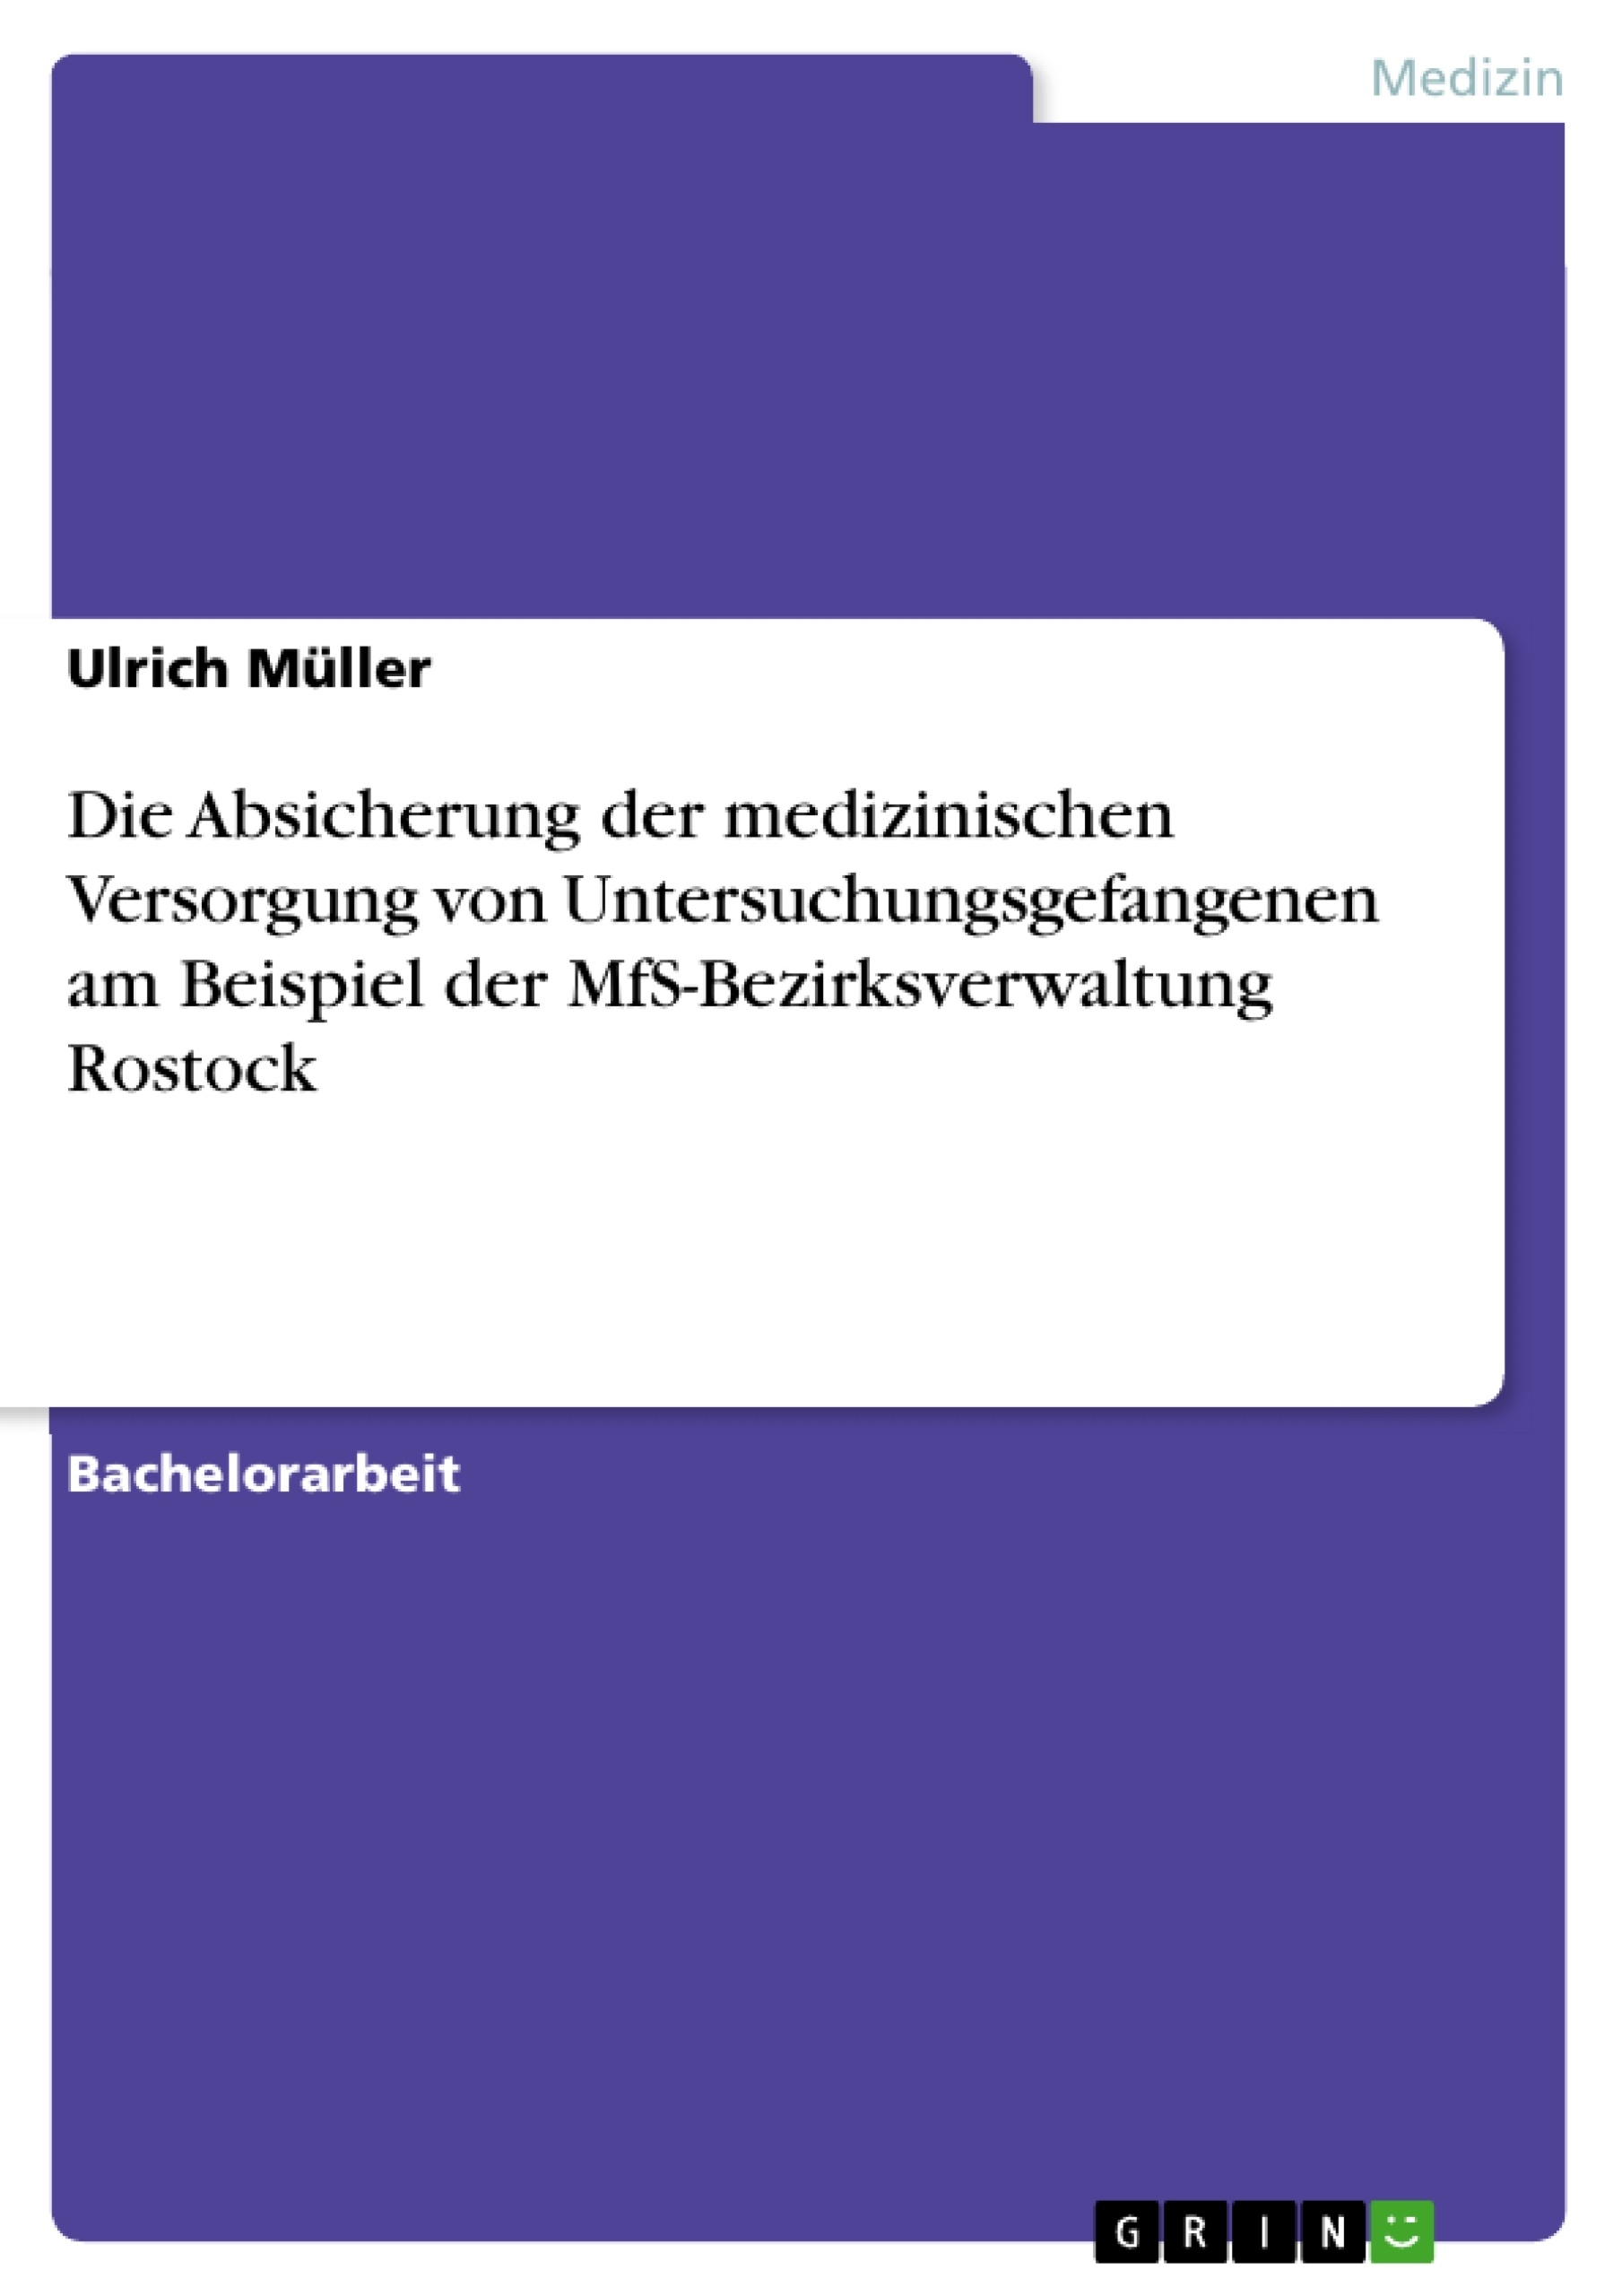 Title: Die Absicherung der medizinischen Versorgung von Untersuchungsgefangenen am Beispiel der MfS-Bezirksverwaltung Rostock